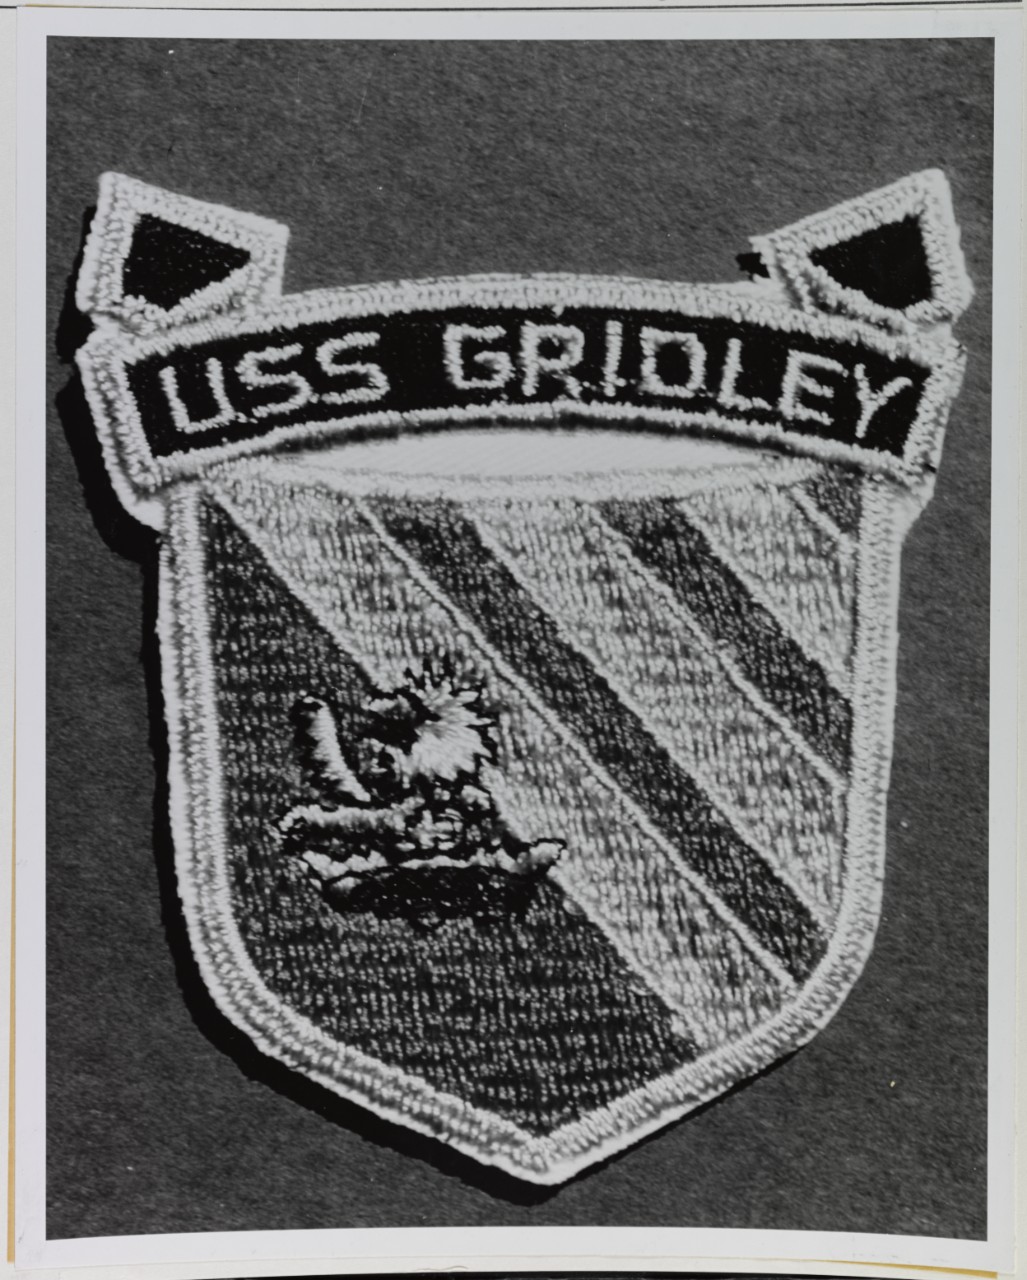 Insignia:  USS GRIDLEY (DLG-21)